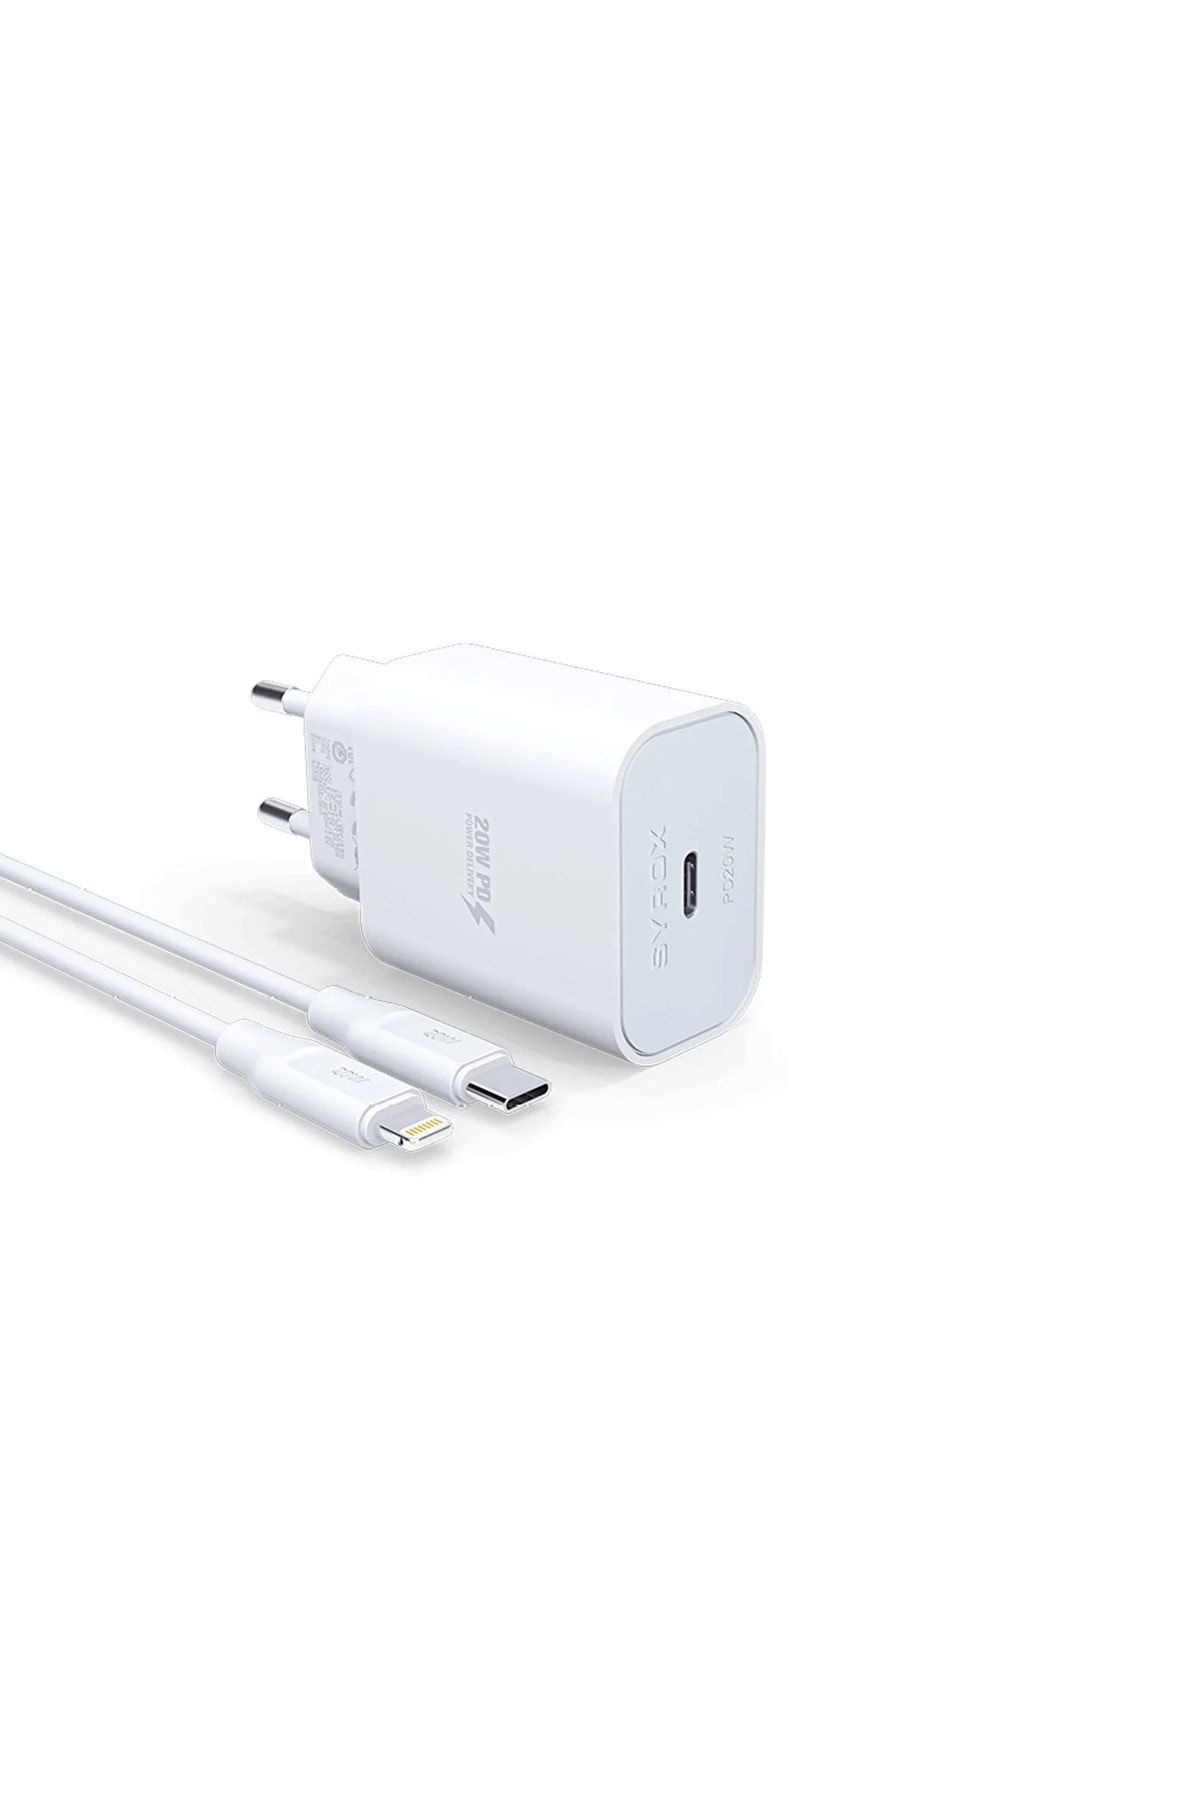 Syrox Apple Iphone 12 Mini 5g Uyumlu Hızlı Şarj Cihazı Lightning 20w Şarj Aleti Seti